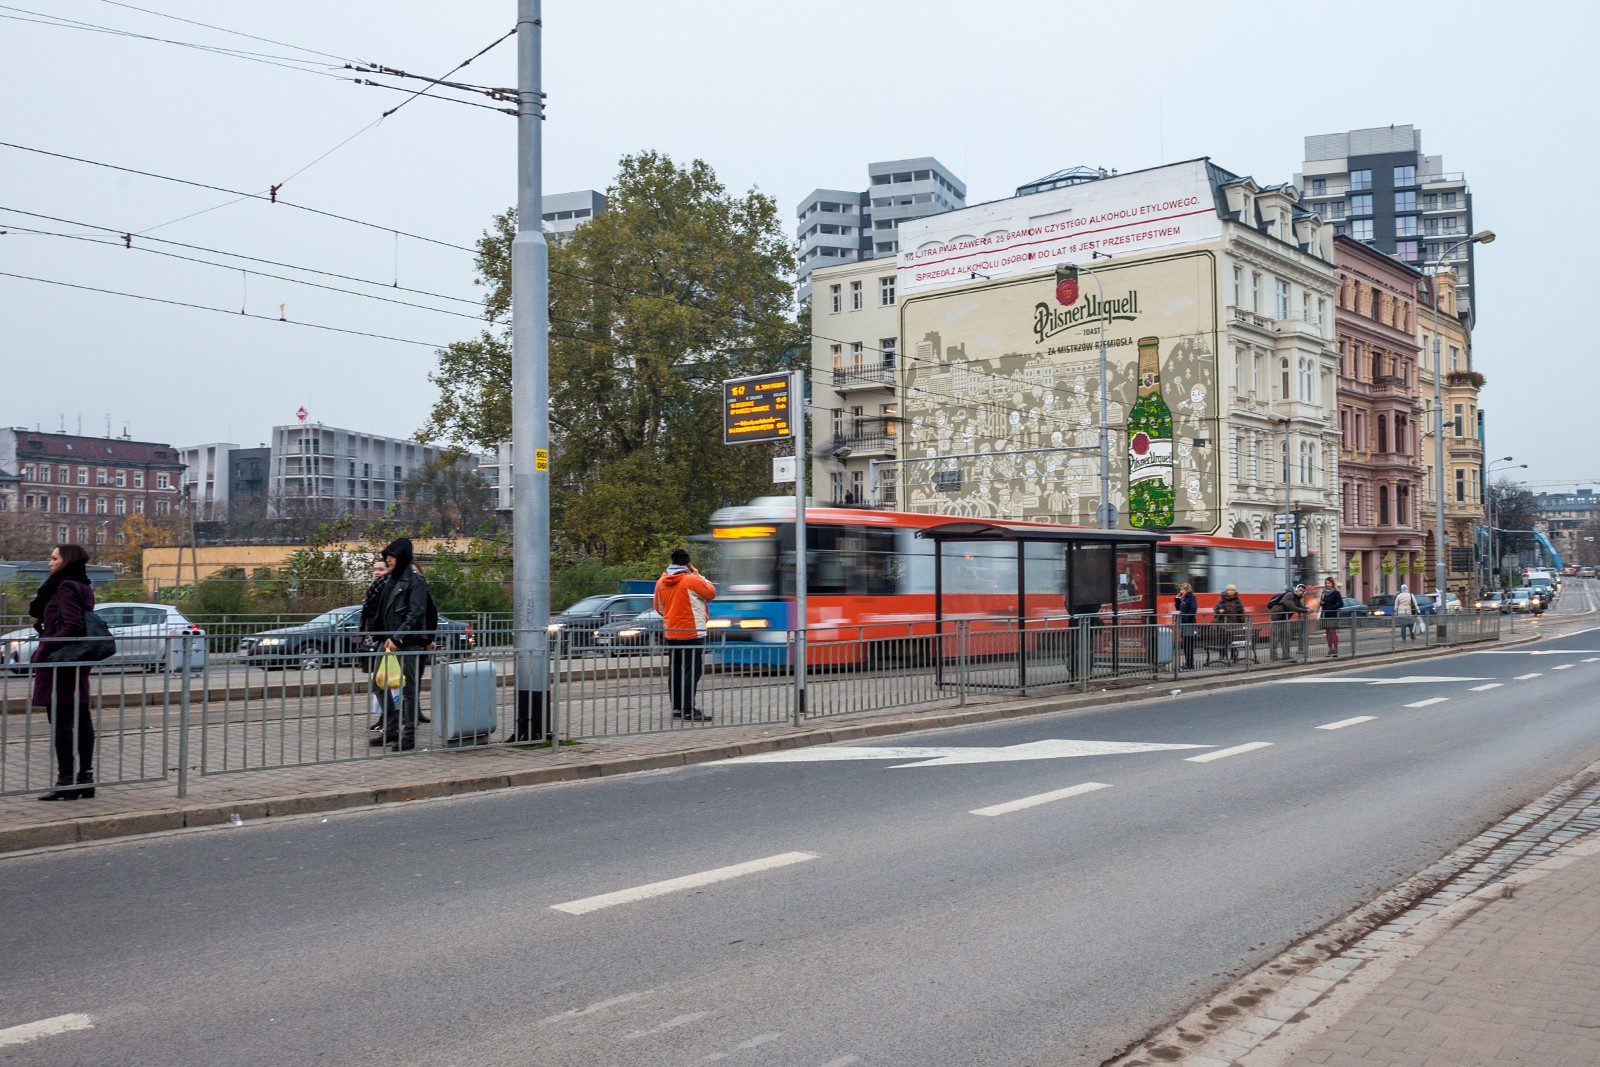 Graffiti reklamowe na ścianie Podwale 7 Wrocław promujące markę Pilsner Urquell | Pilsner Urquell | Portfolio